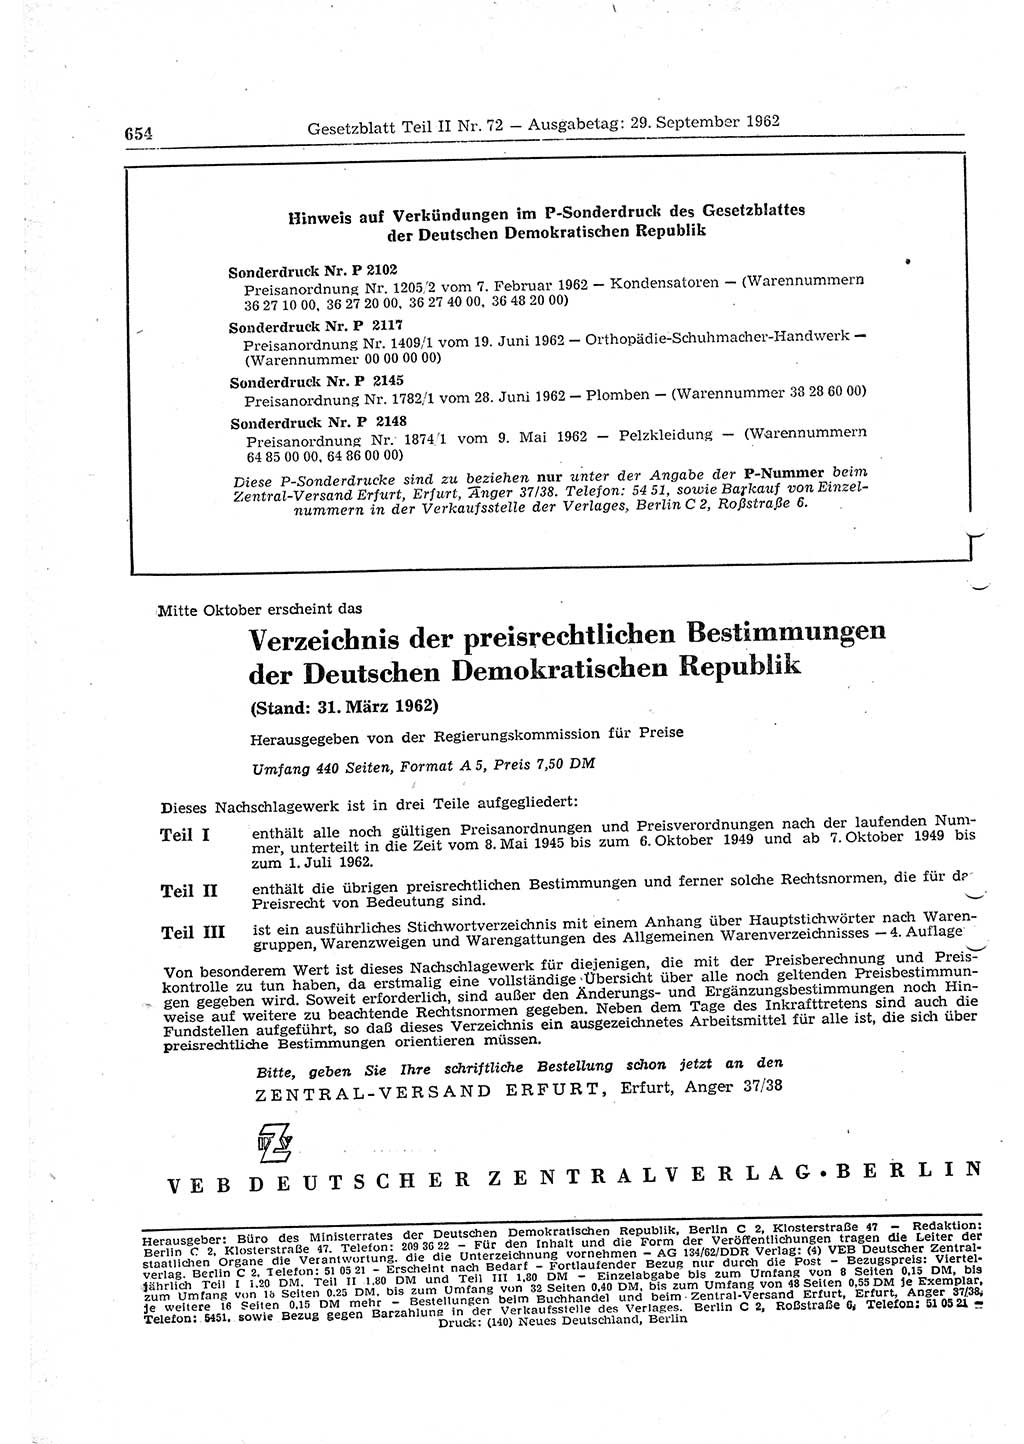 Gesetzblatt (GBl.) der Deutschen Demokratischen Republik (DDR) Teil ⅠⅠ 1962, Seite 654 (GBl. DDR ⅠⅠ 1962, S. 654)